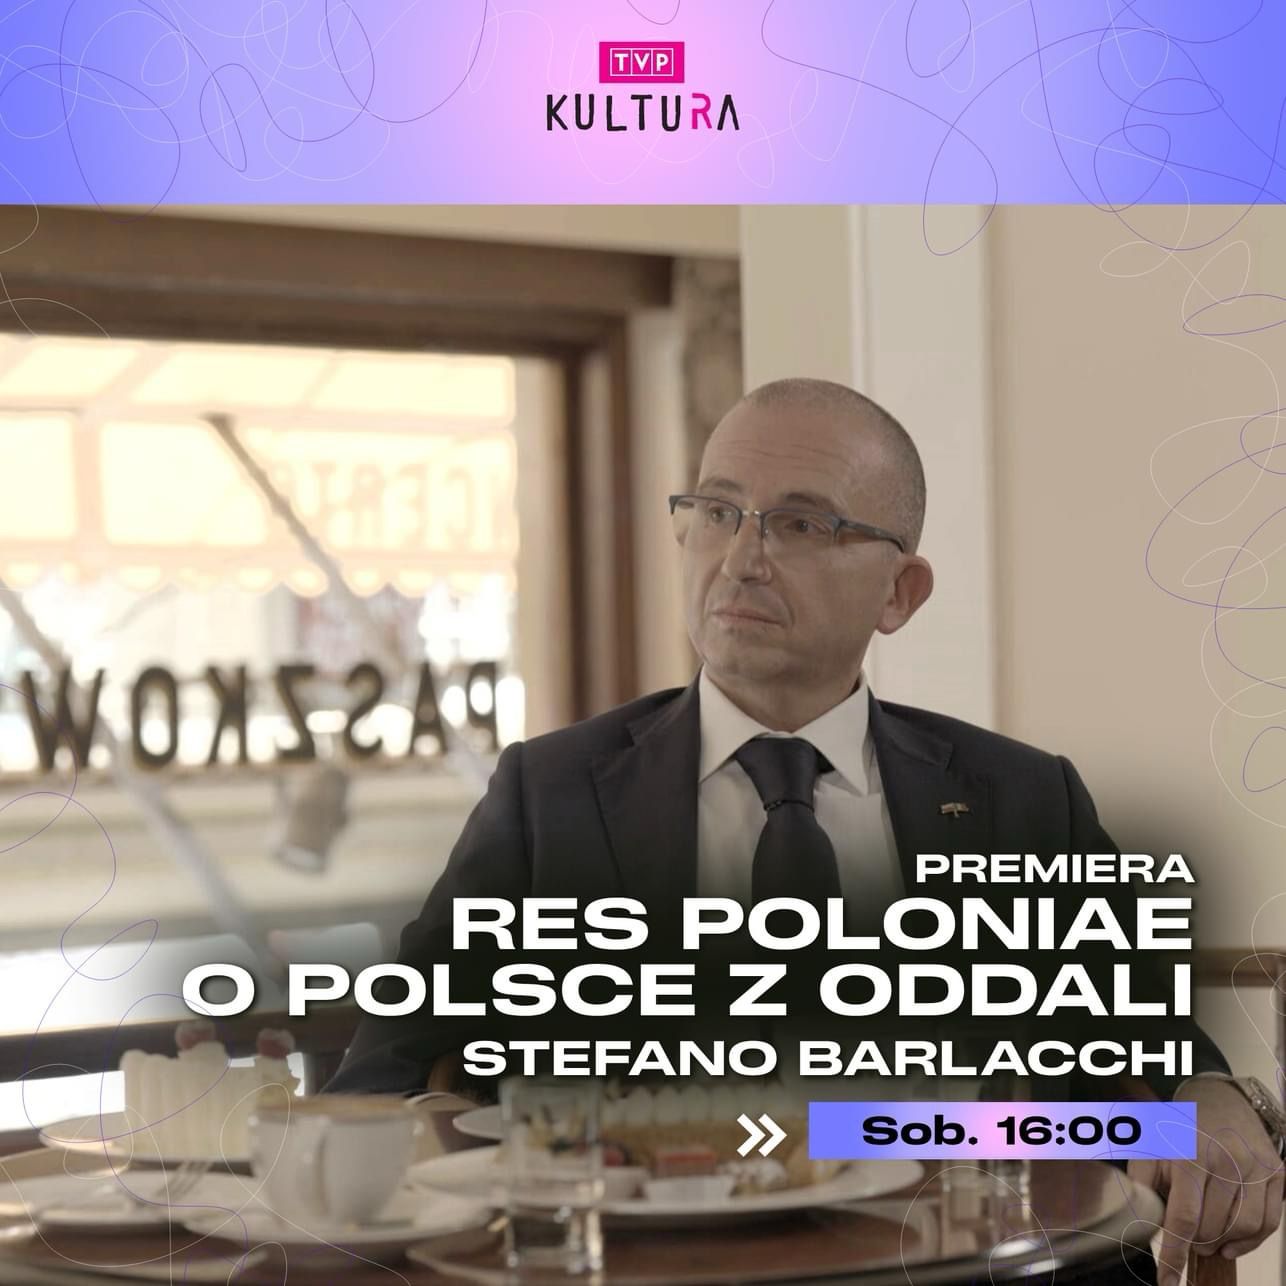 TVP Kultura: La puntata del programma Res Poloniae. Sulla Polonia da lontano con il Console Onorario Stefano Barlacchi